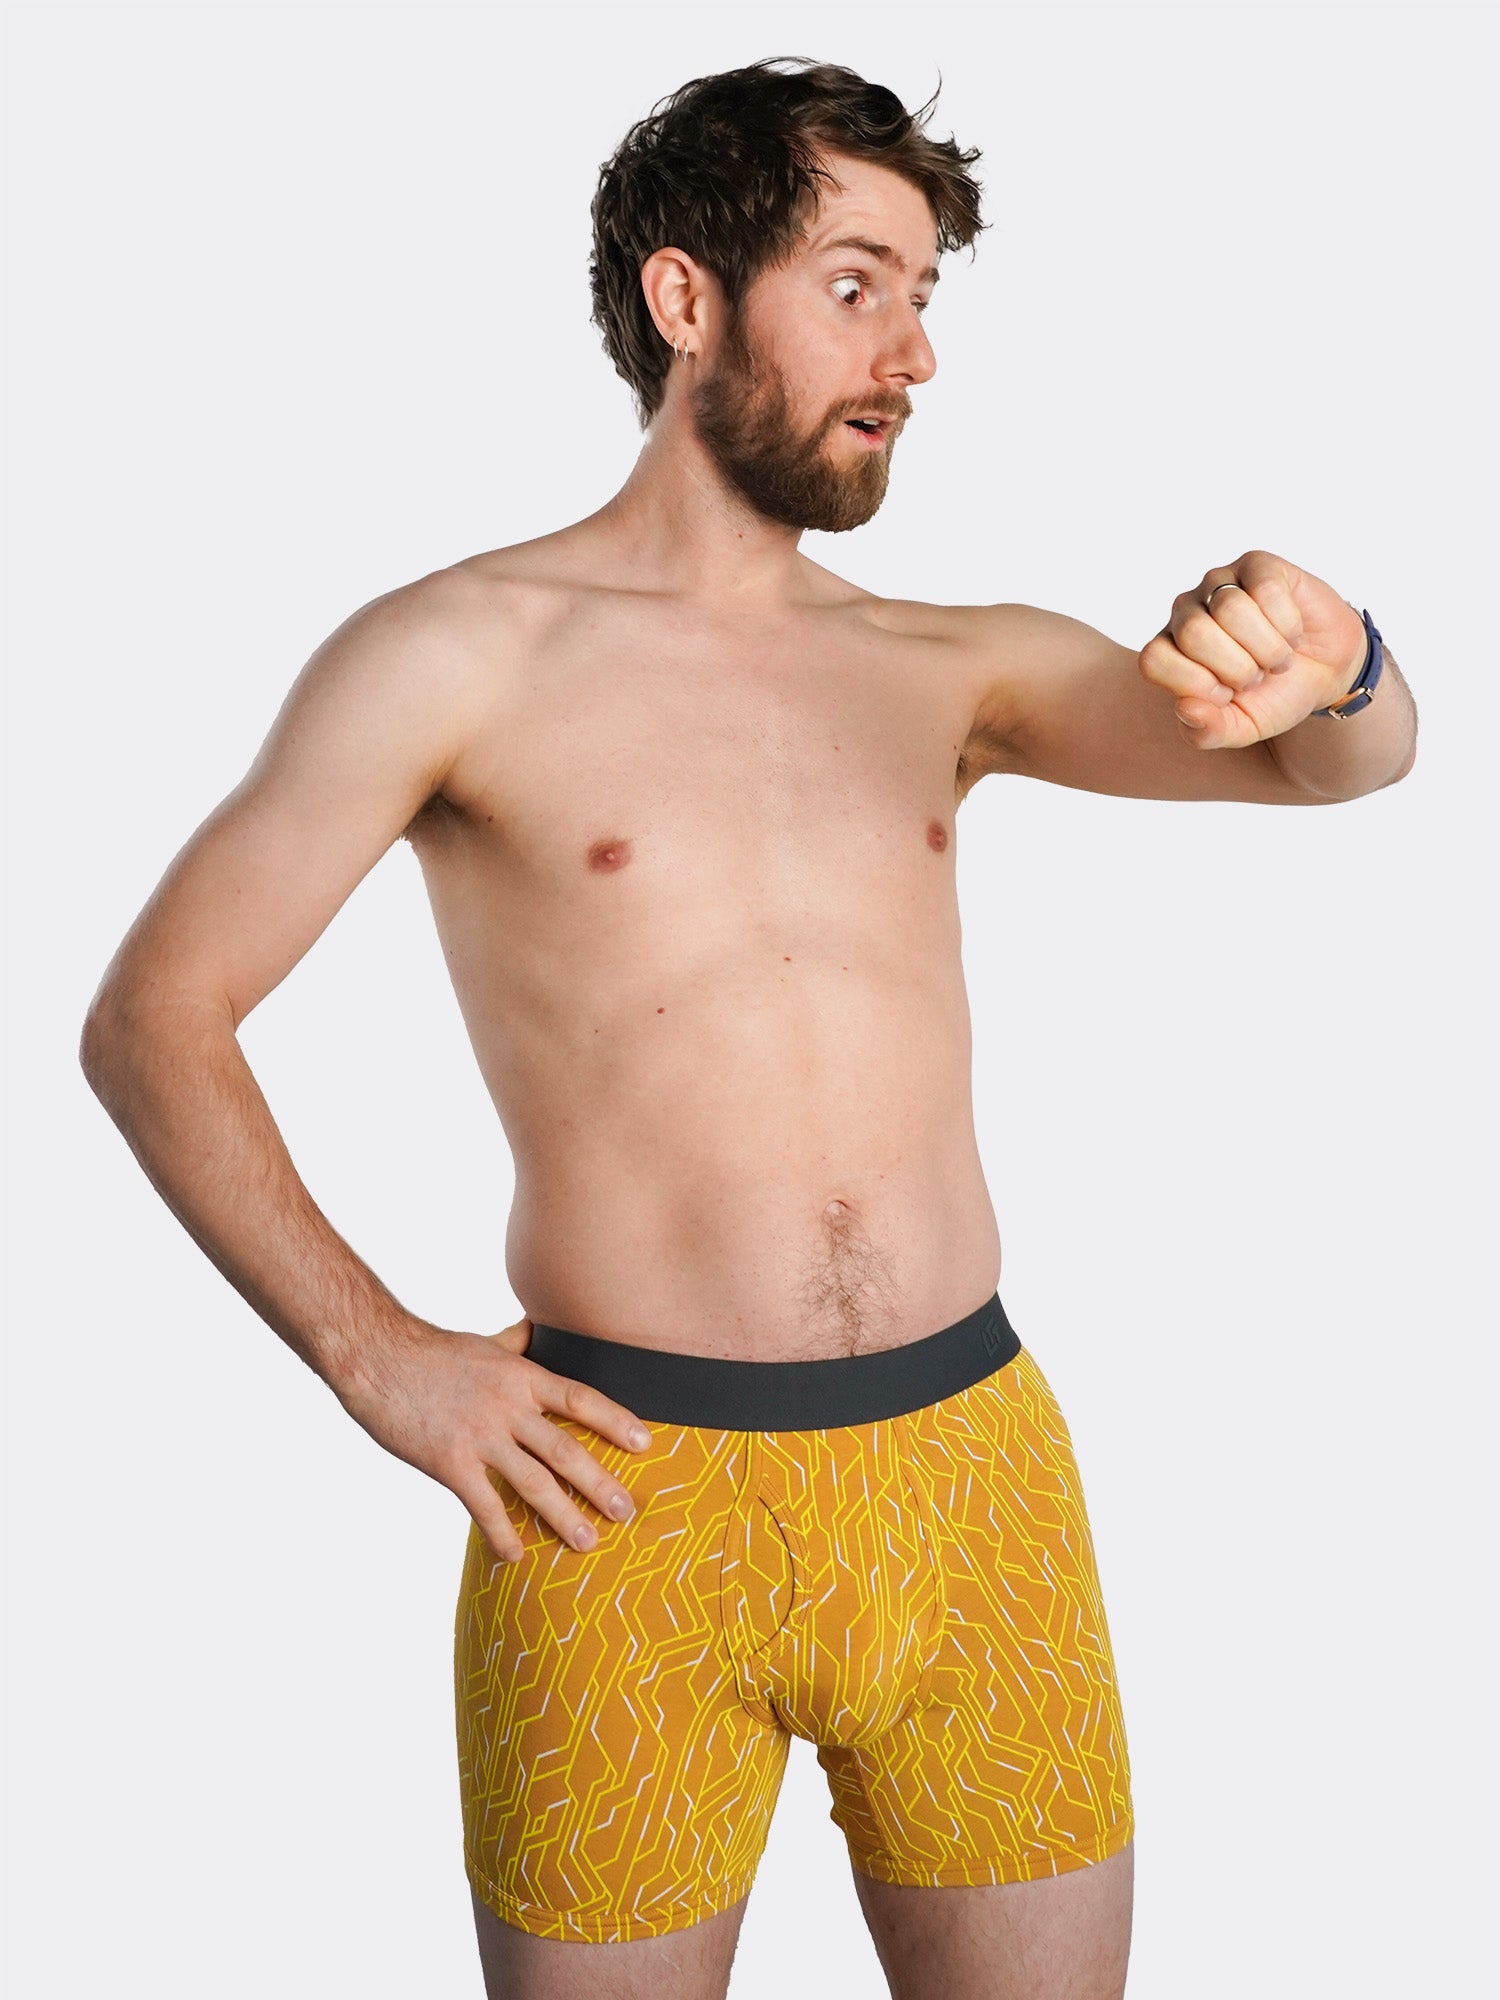  Men's Boxer Briefs - Yellows / Men's Boxer Briefs